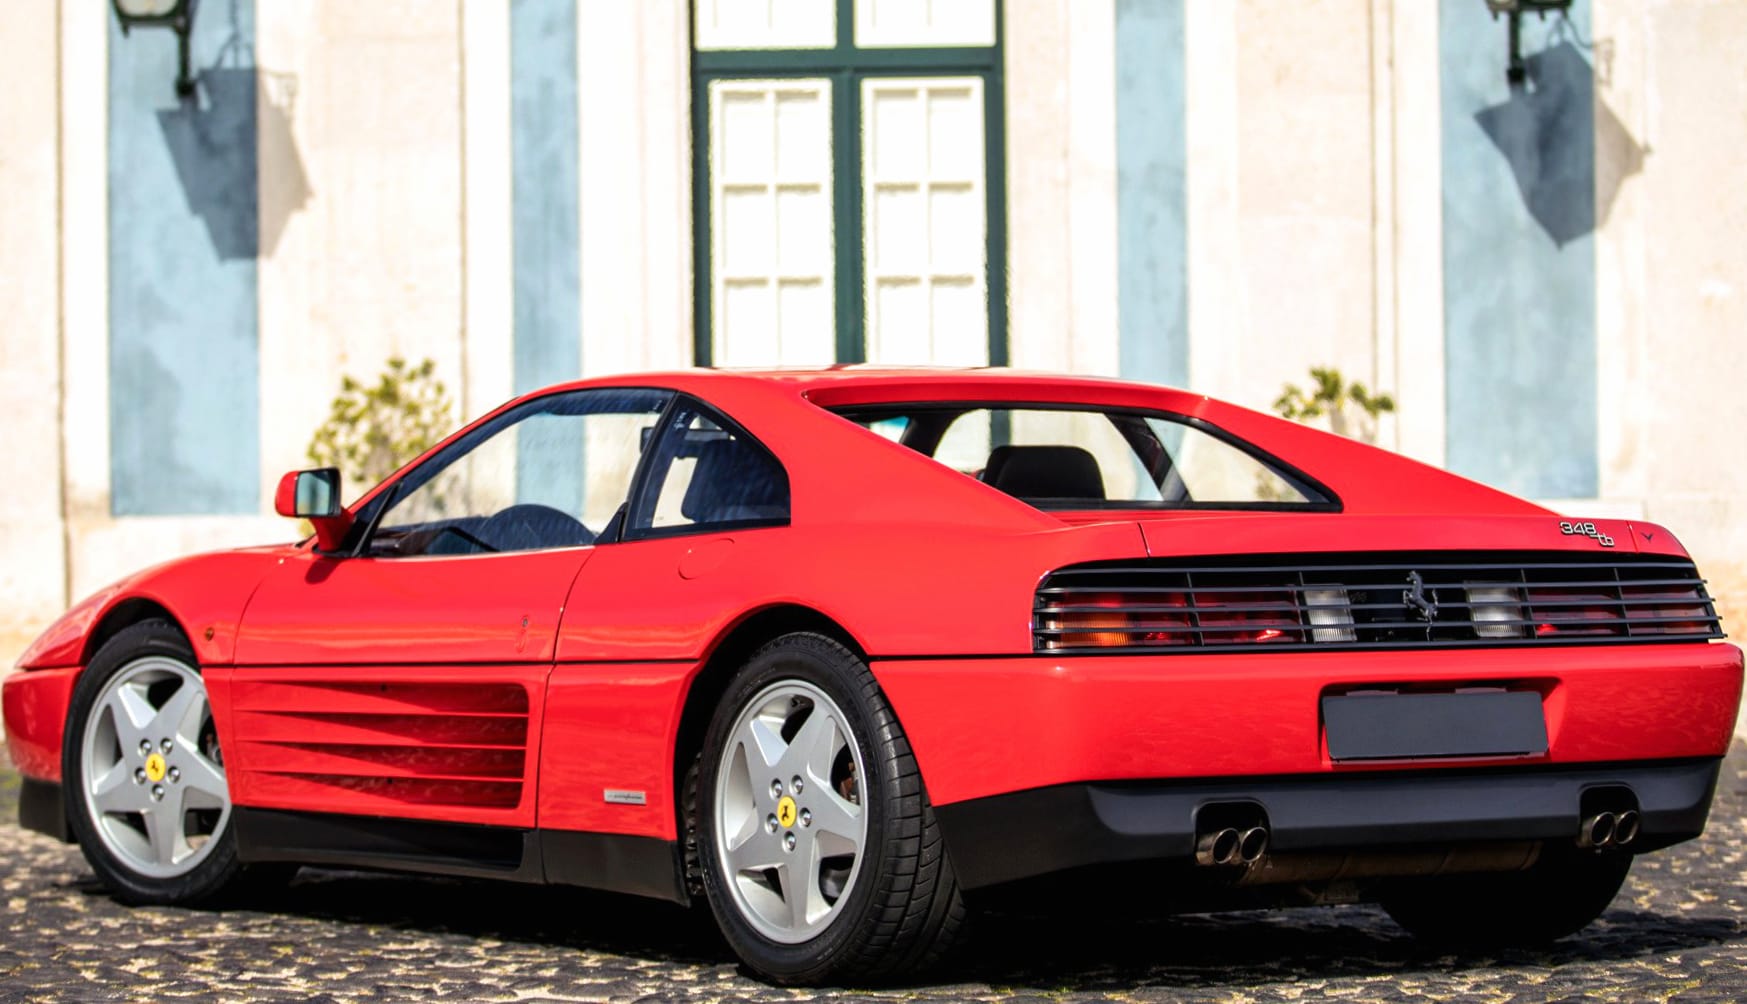 Ferrari 348 TB at 1152 x 864 size wallpapers HD quality